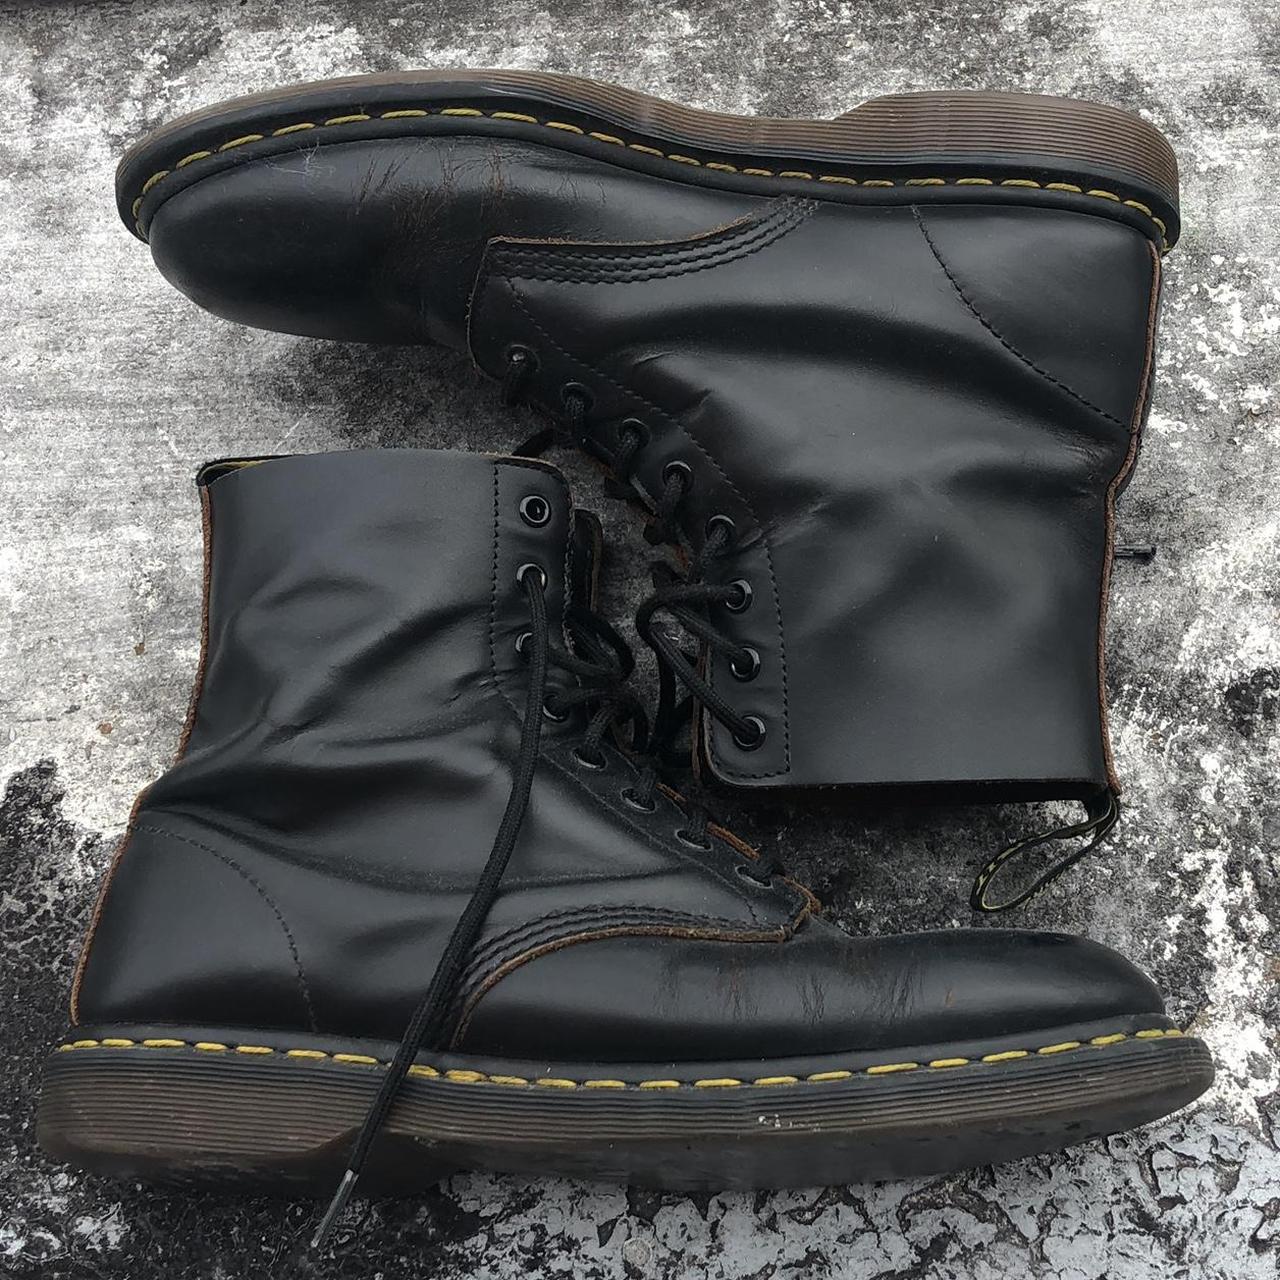 Weathered Black Leather Doc Marten Boots US men's... - Depop